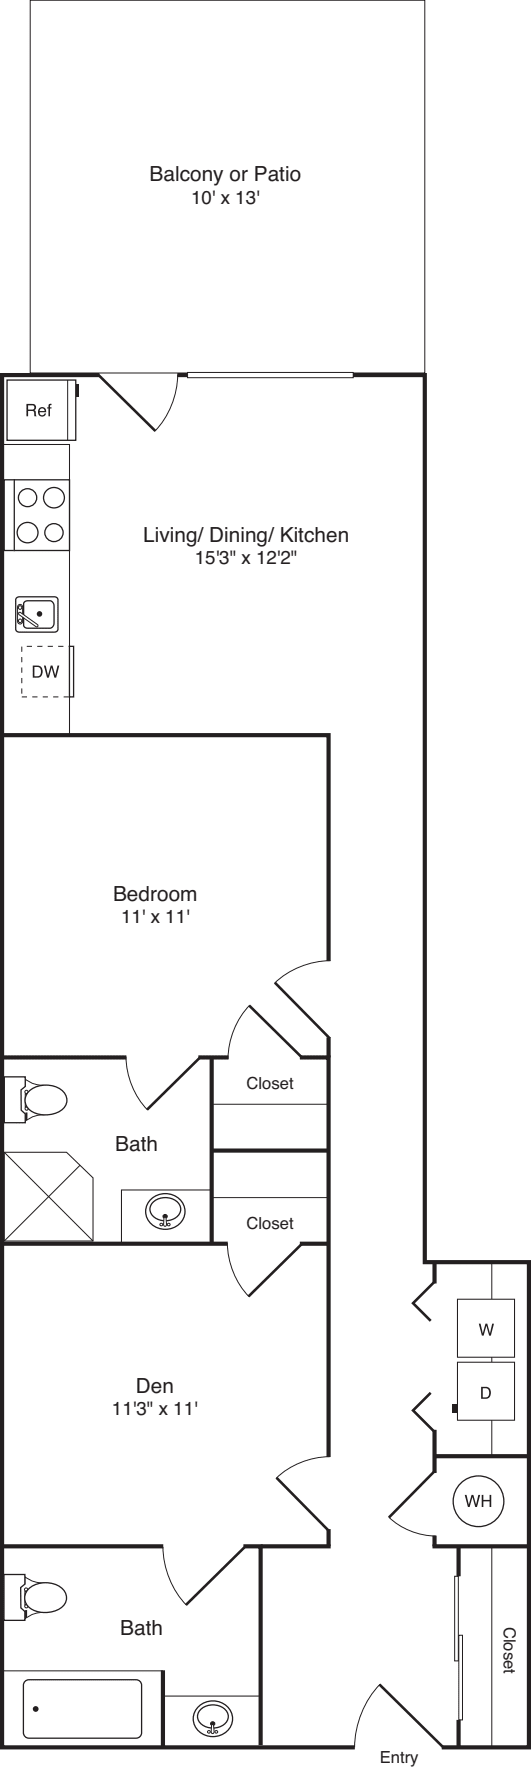 1 Bedroom with Den